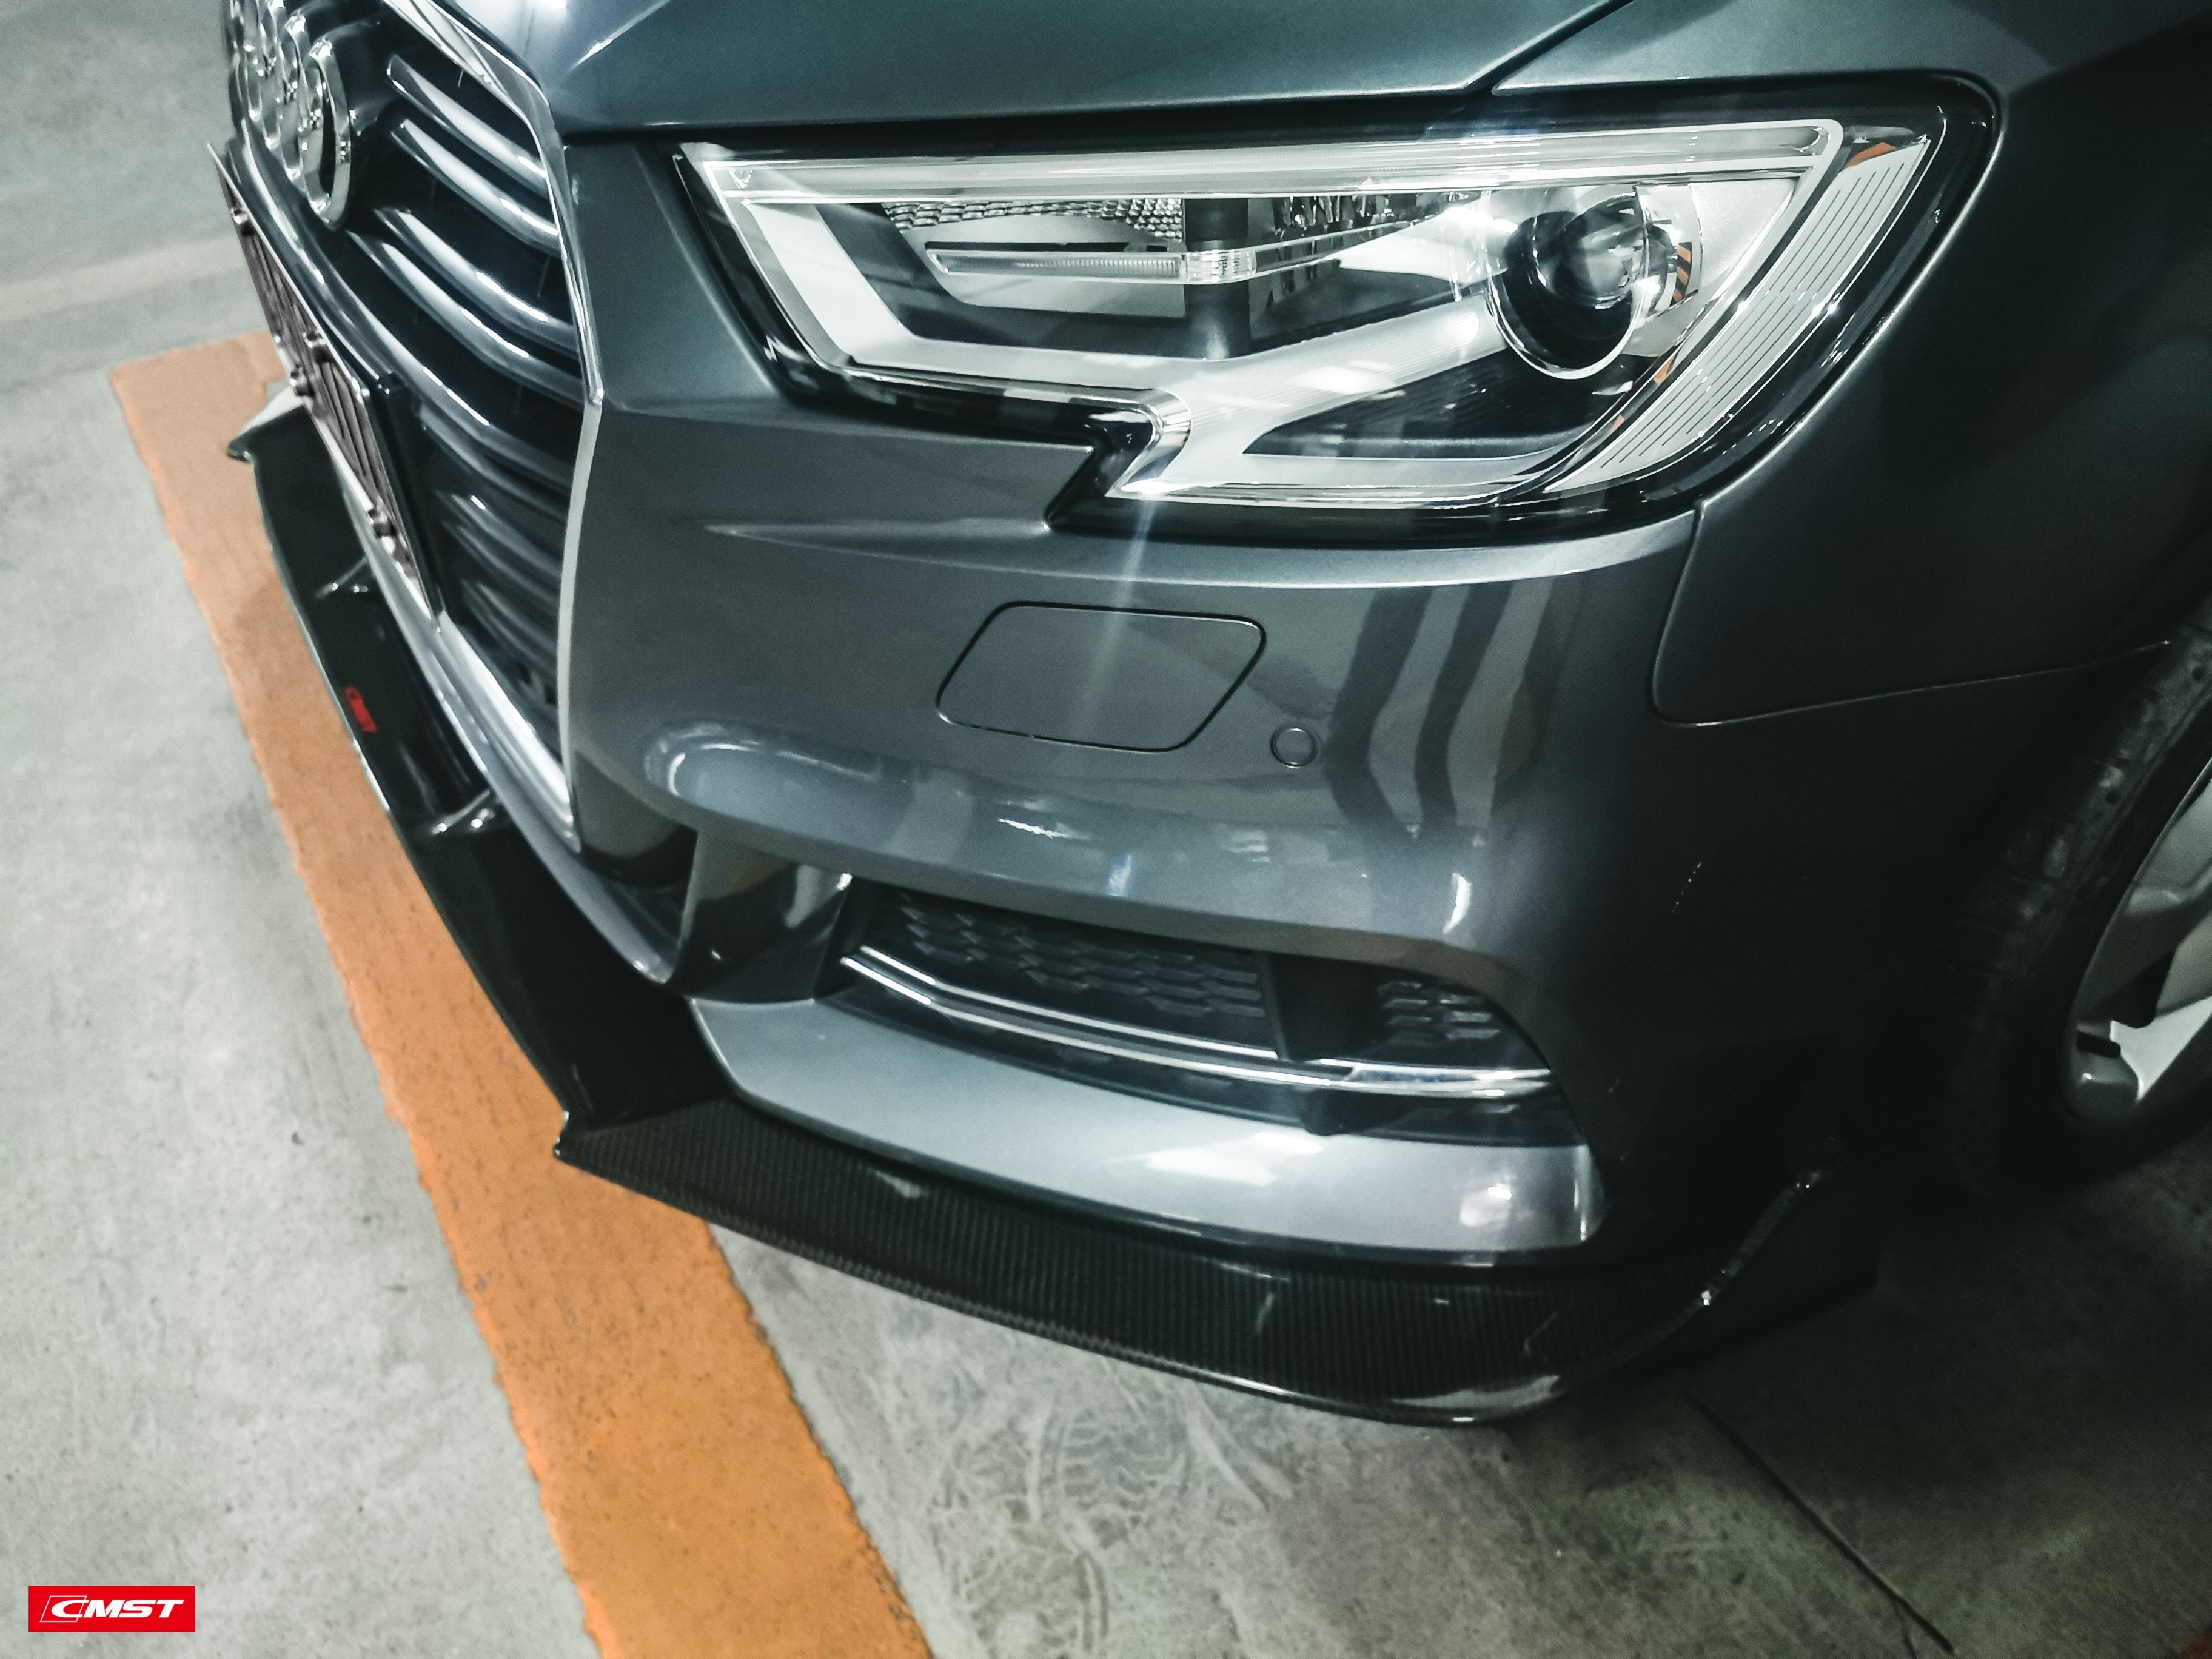 CMST Carbon Fiber Front Lip for Audi A3 S Line & S3 2017-2020